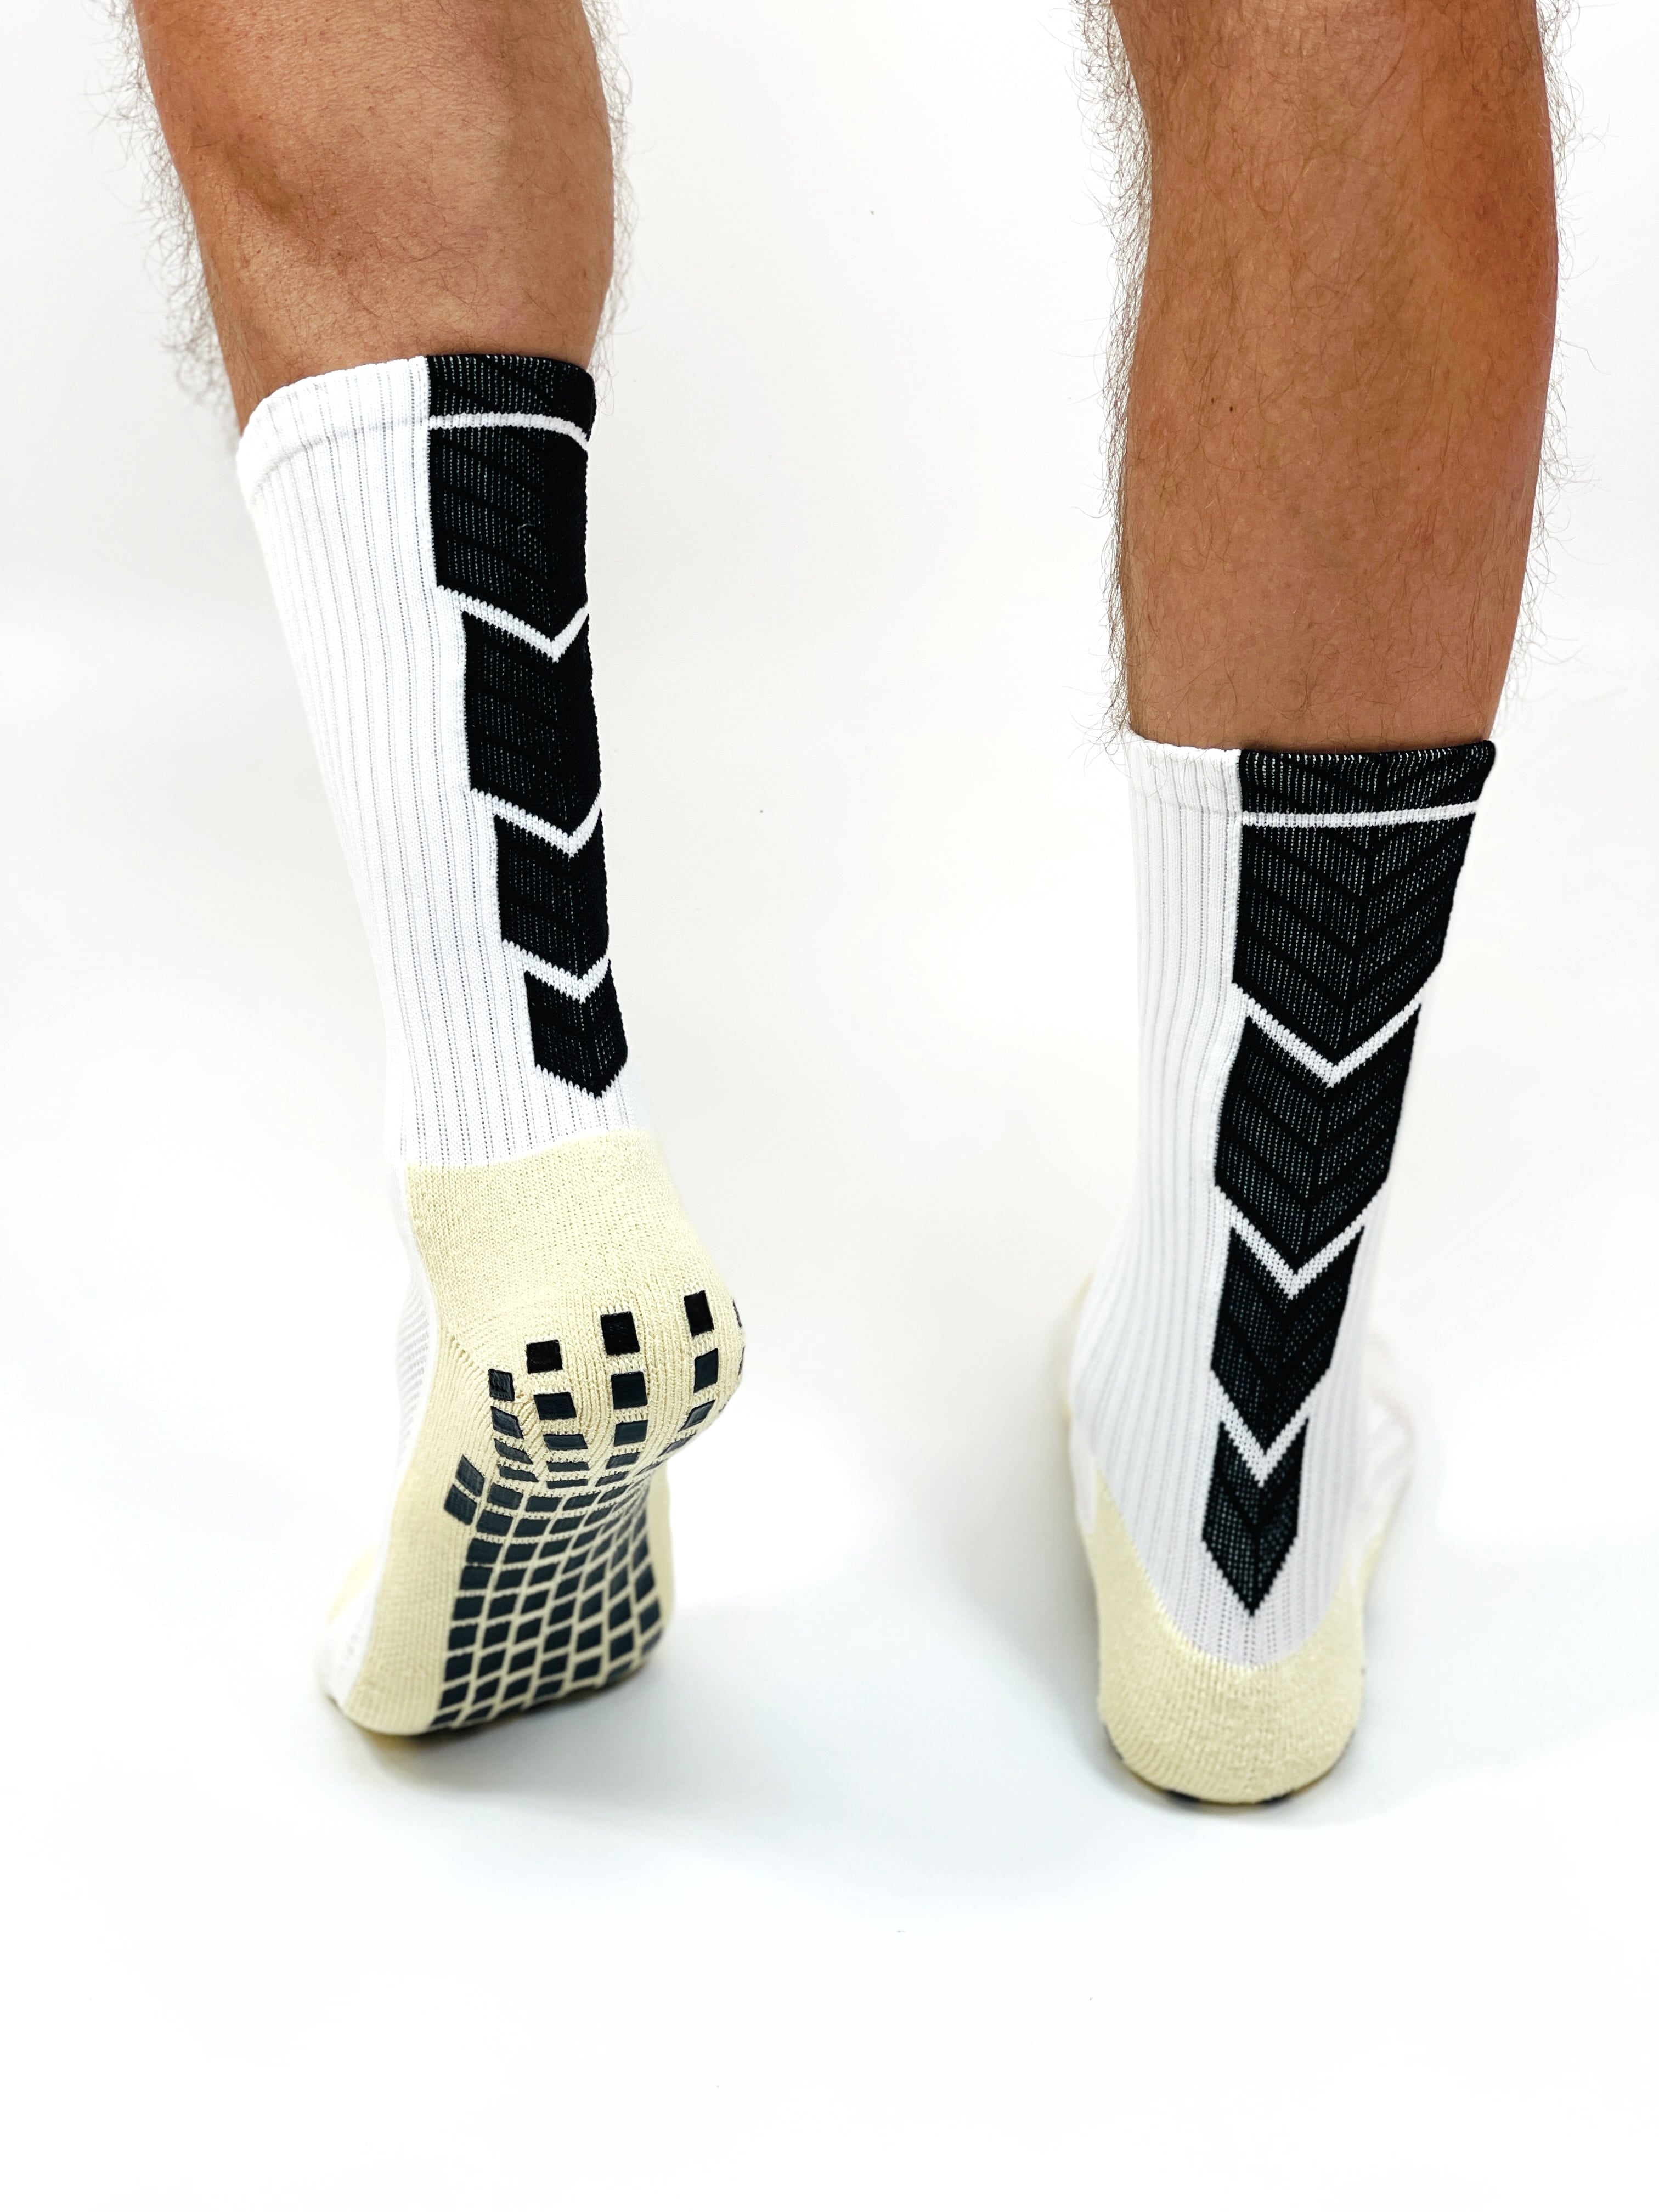 Спортивные носки длинные для тренировок